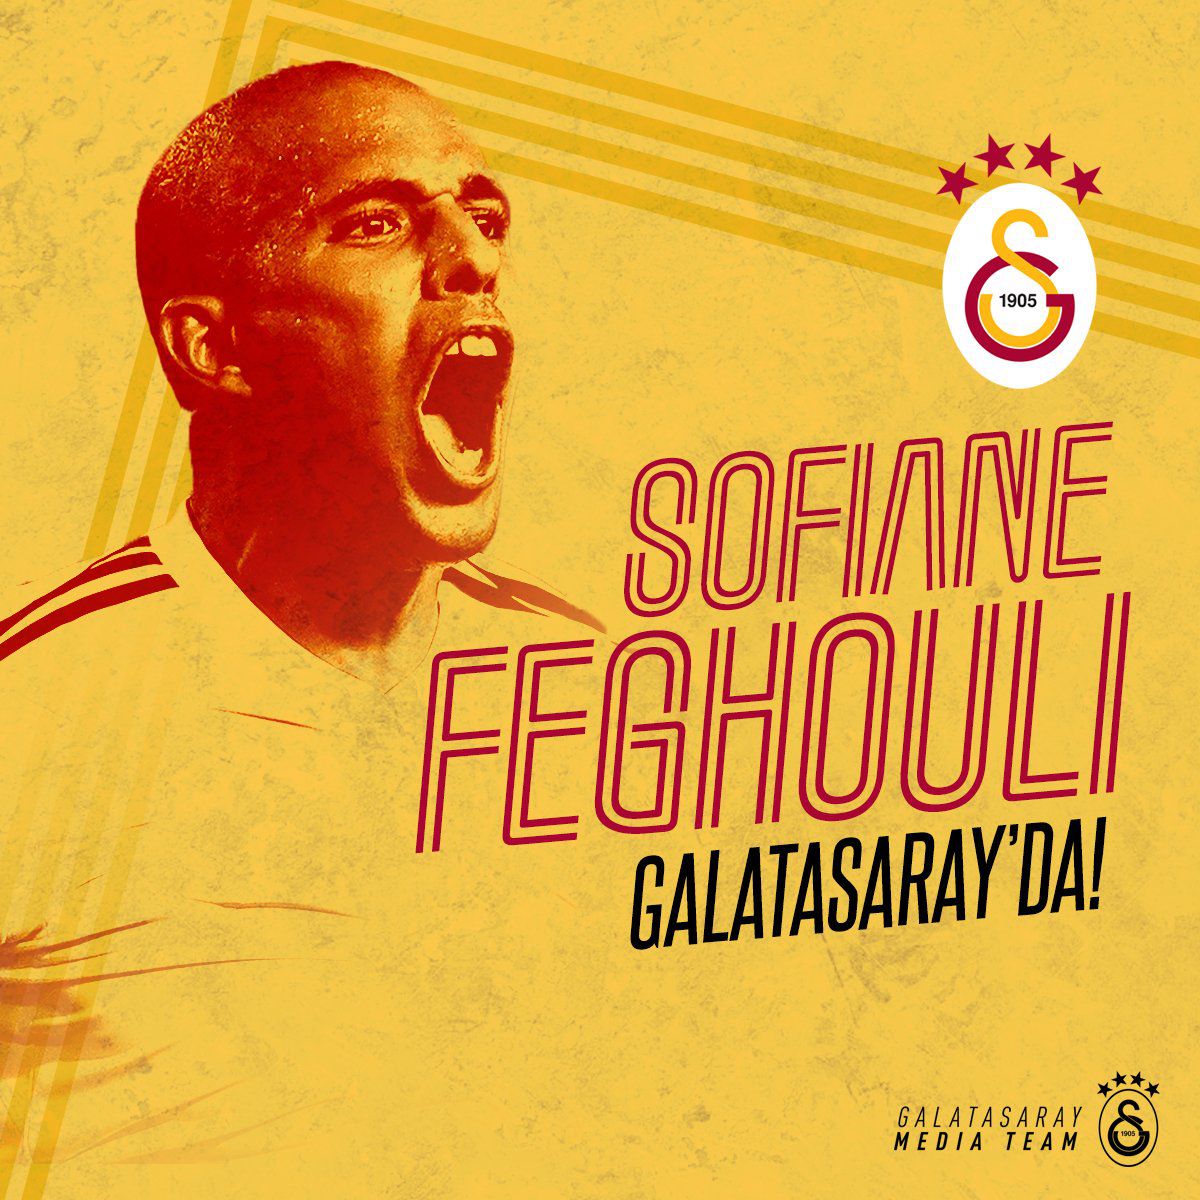 Feghouli tekent voor 5 jaar bij Galatasaray